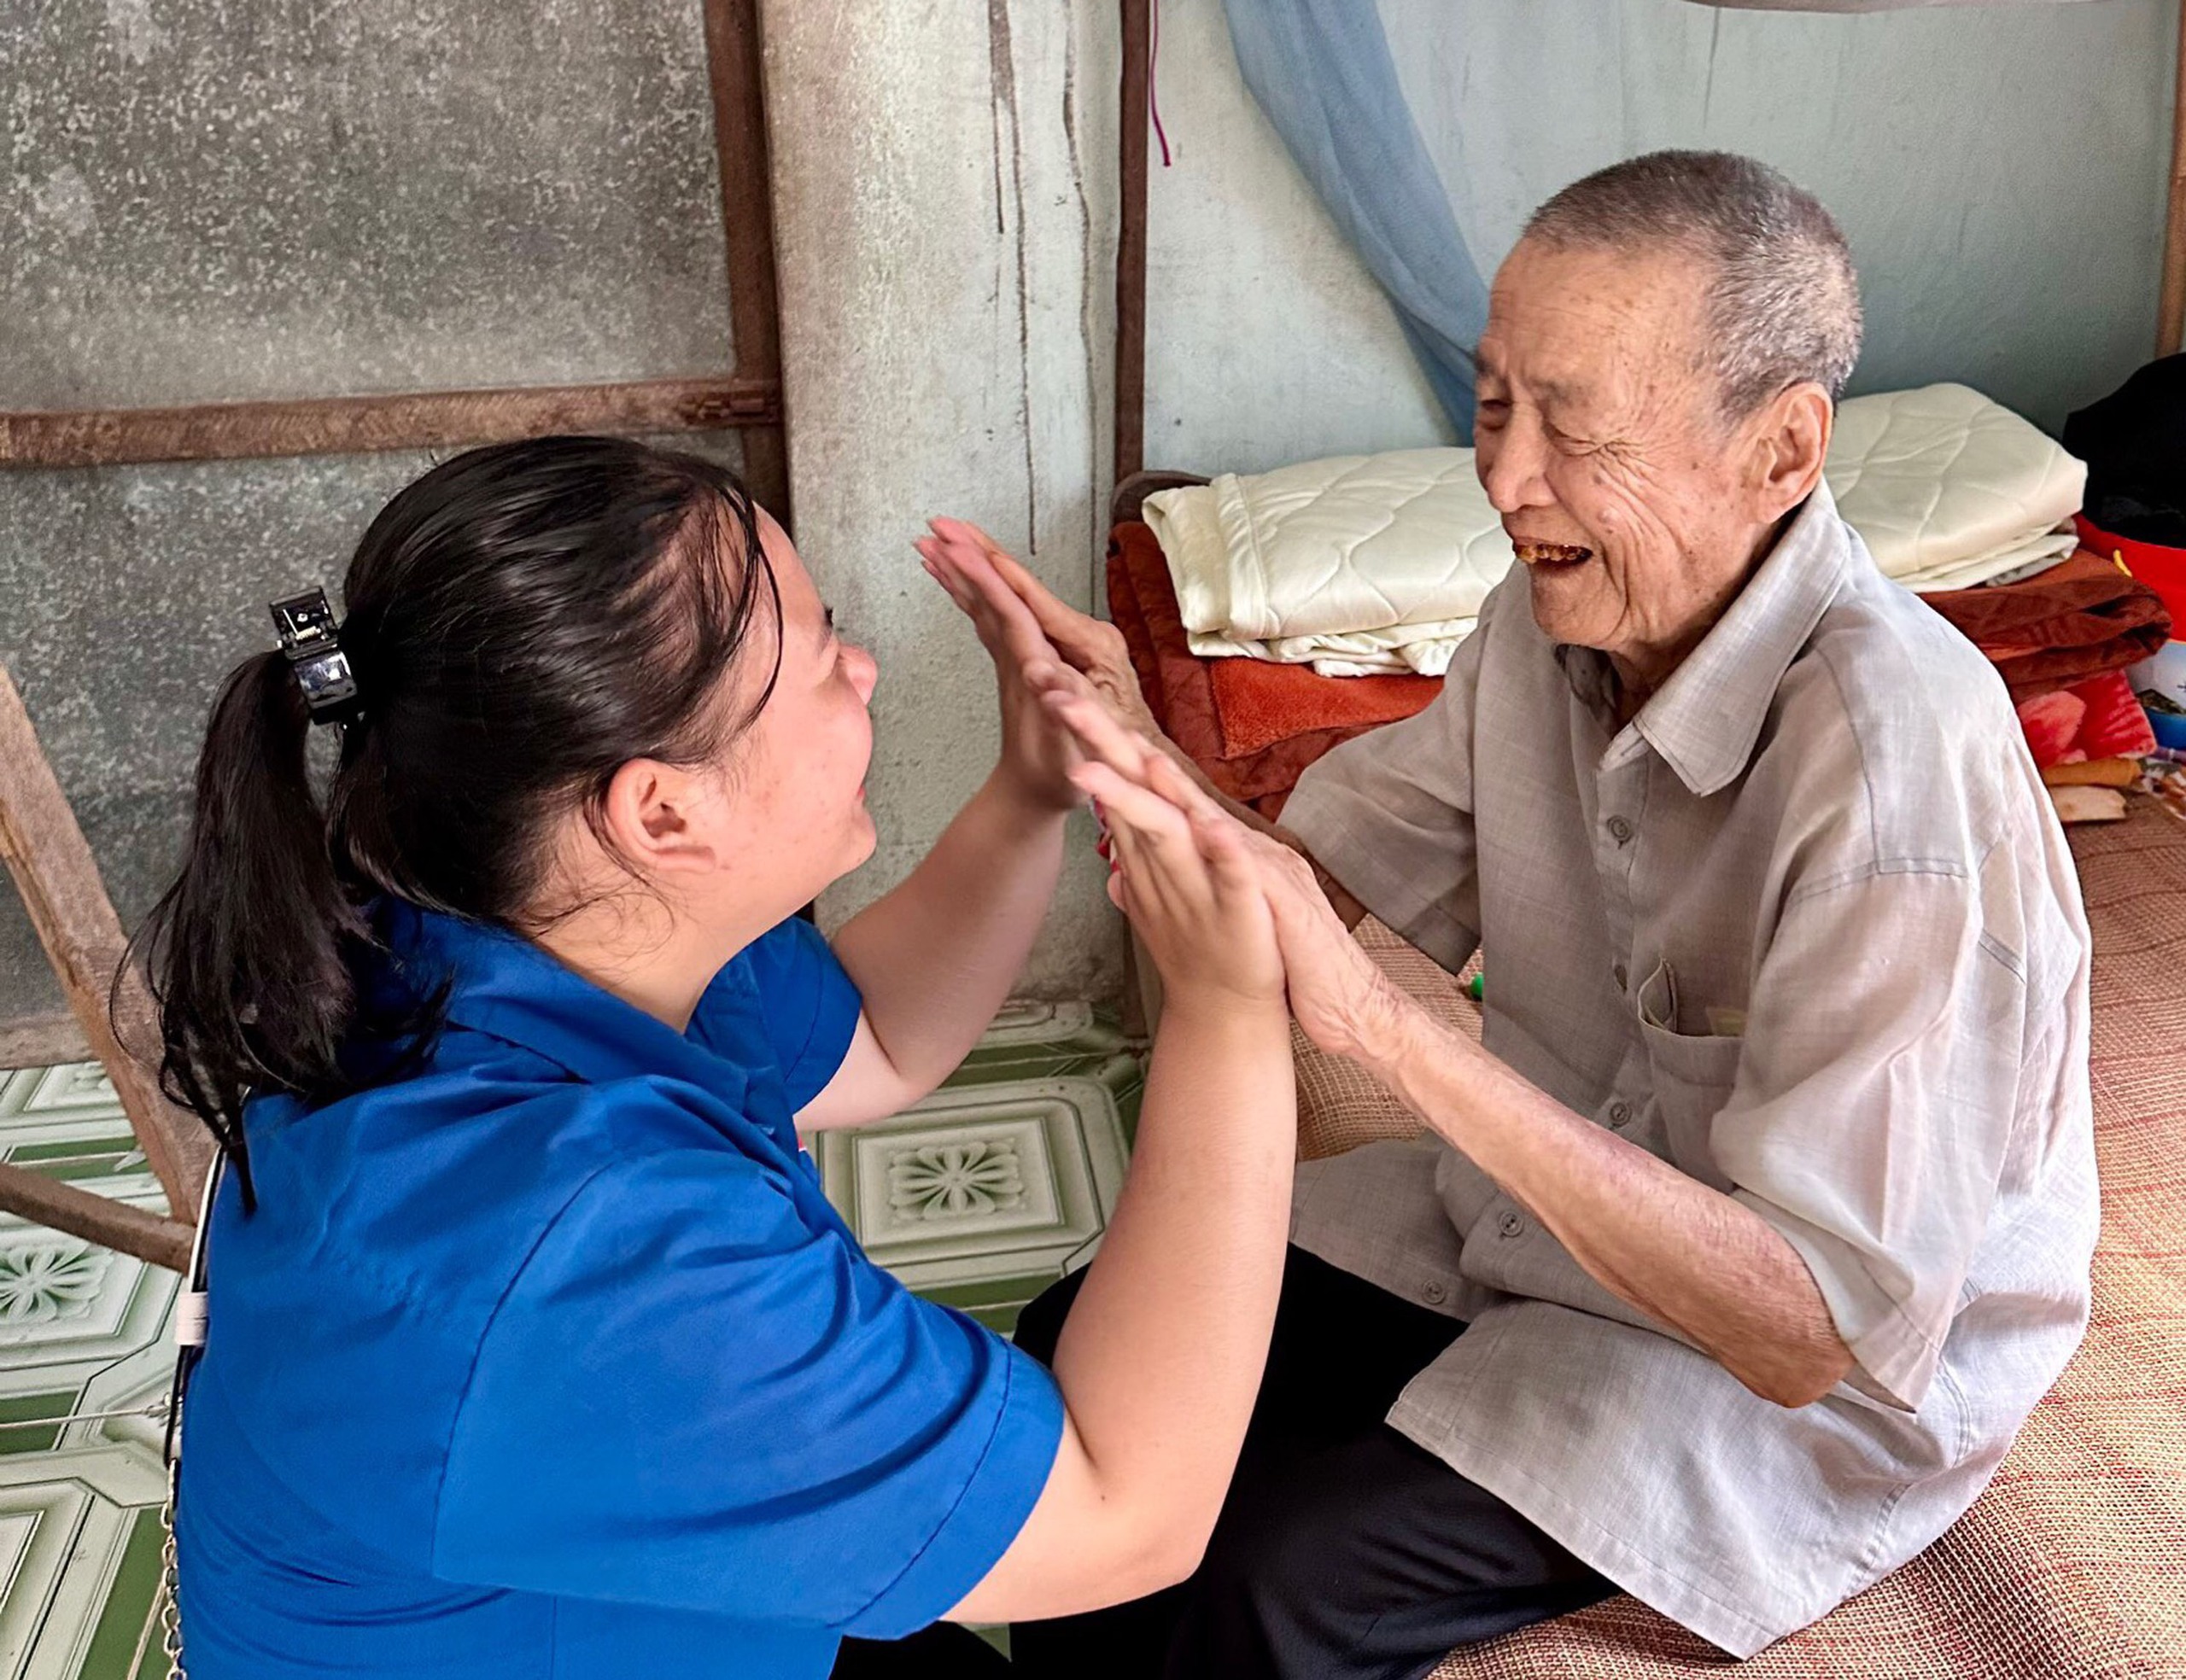 Nụ cười của một cụ ông sẻ chia với tình nguyện viên, trong dự án “Nuôi cụ” - chăm sóc người già neo đơn cuối đời